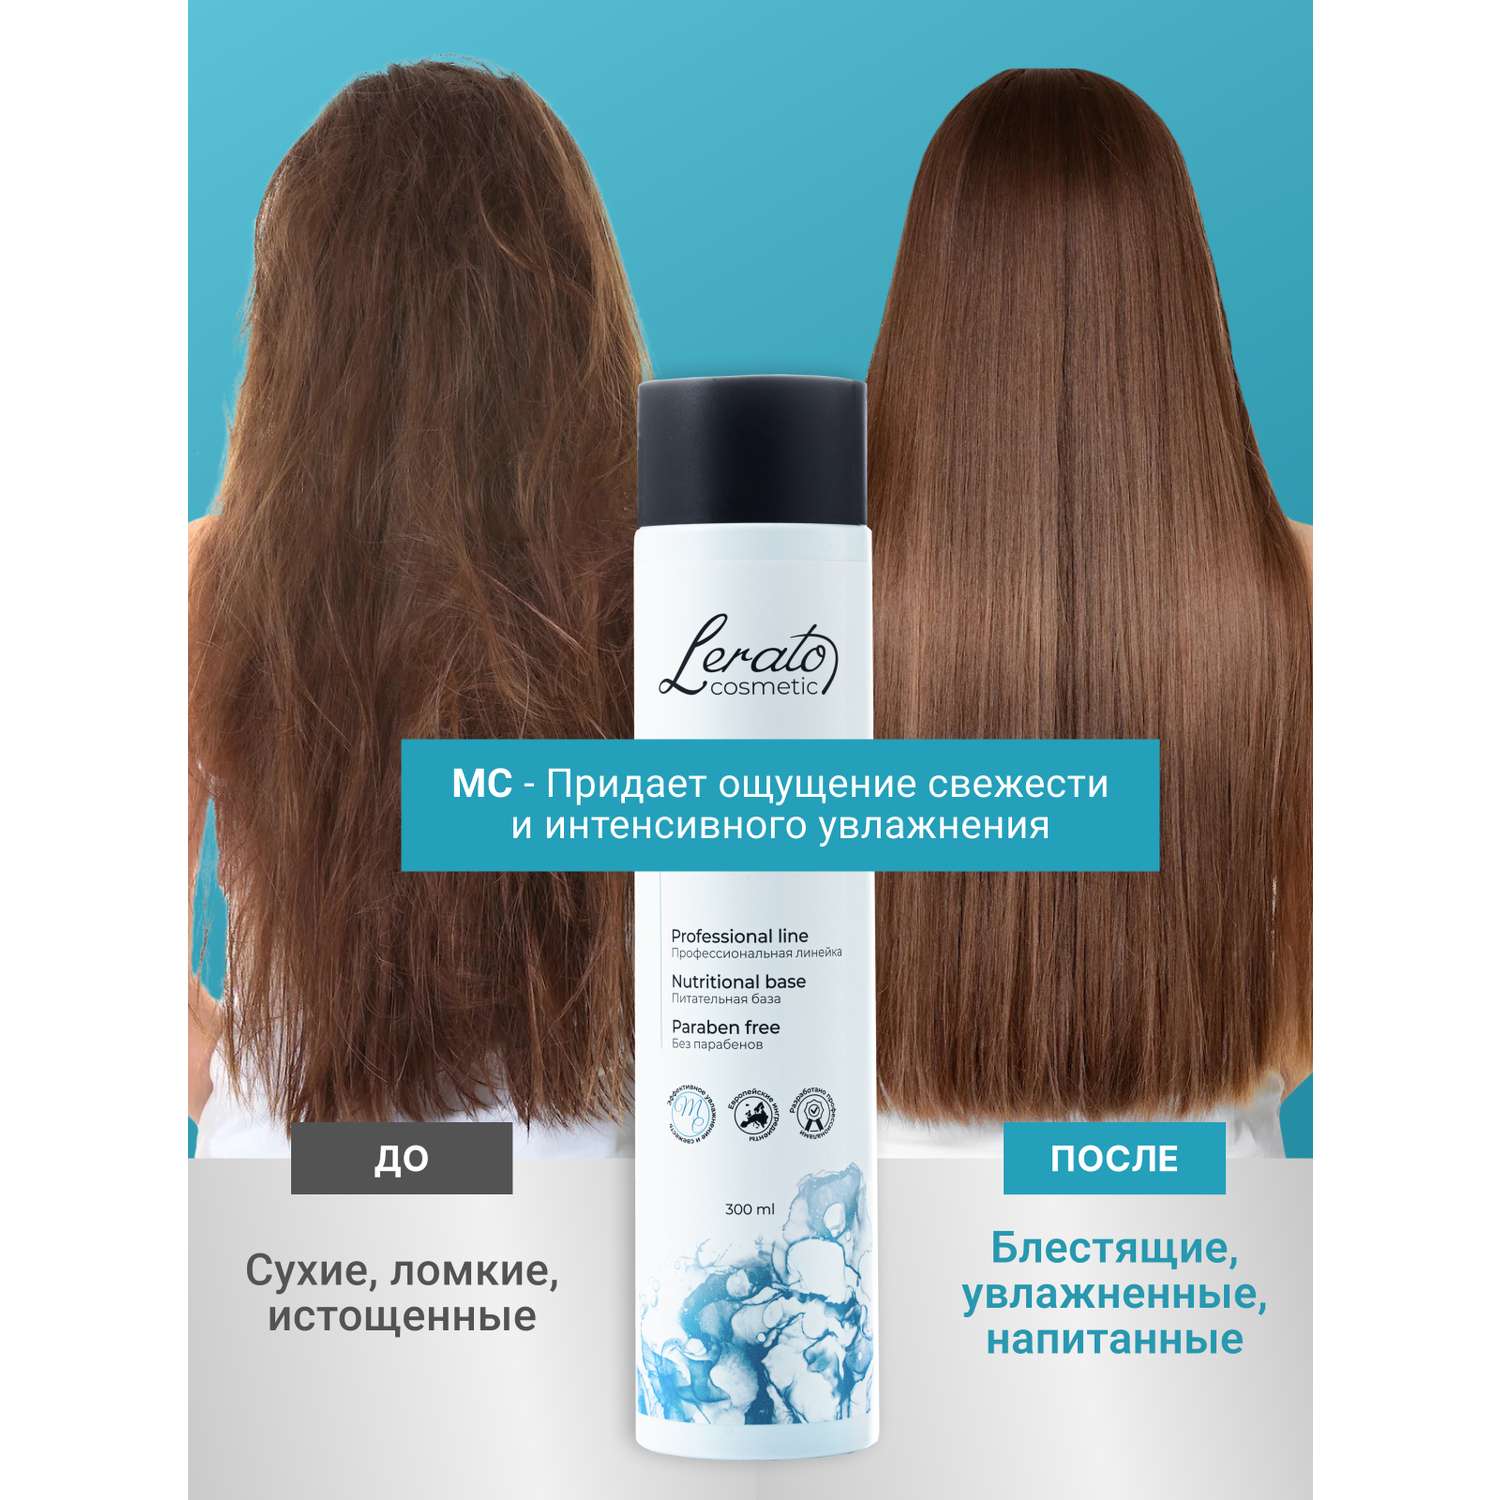 Кондиционер Lerato Cosmetic для увлажнения и продления свежести волос 300 мл - фото 4